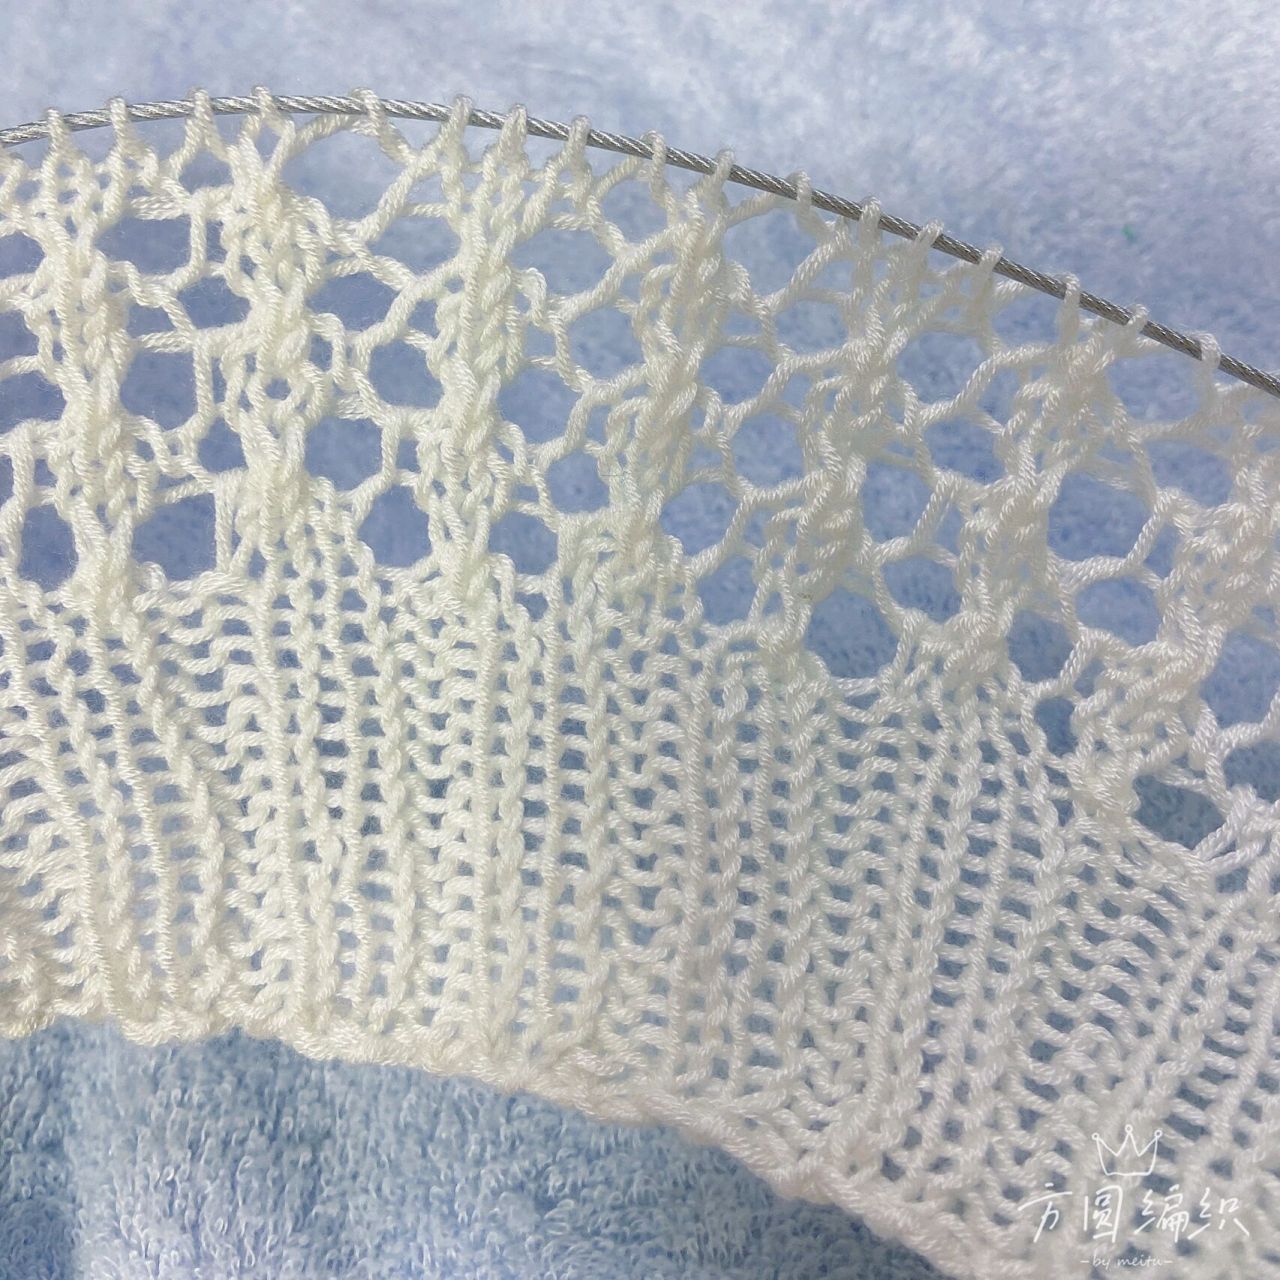 夏季镂空花蕾丝针织衫棒针编织教程基础教程 特别适合小白,喜欢的自己